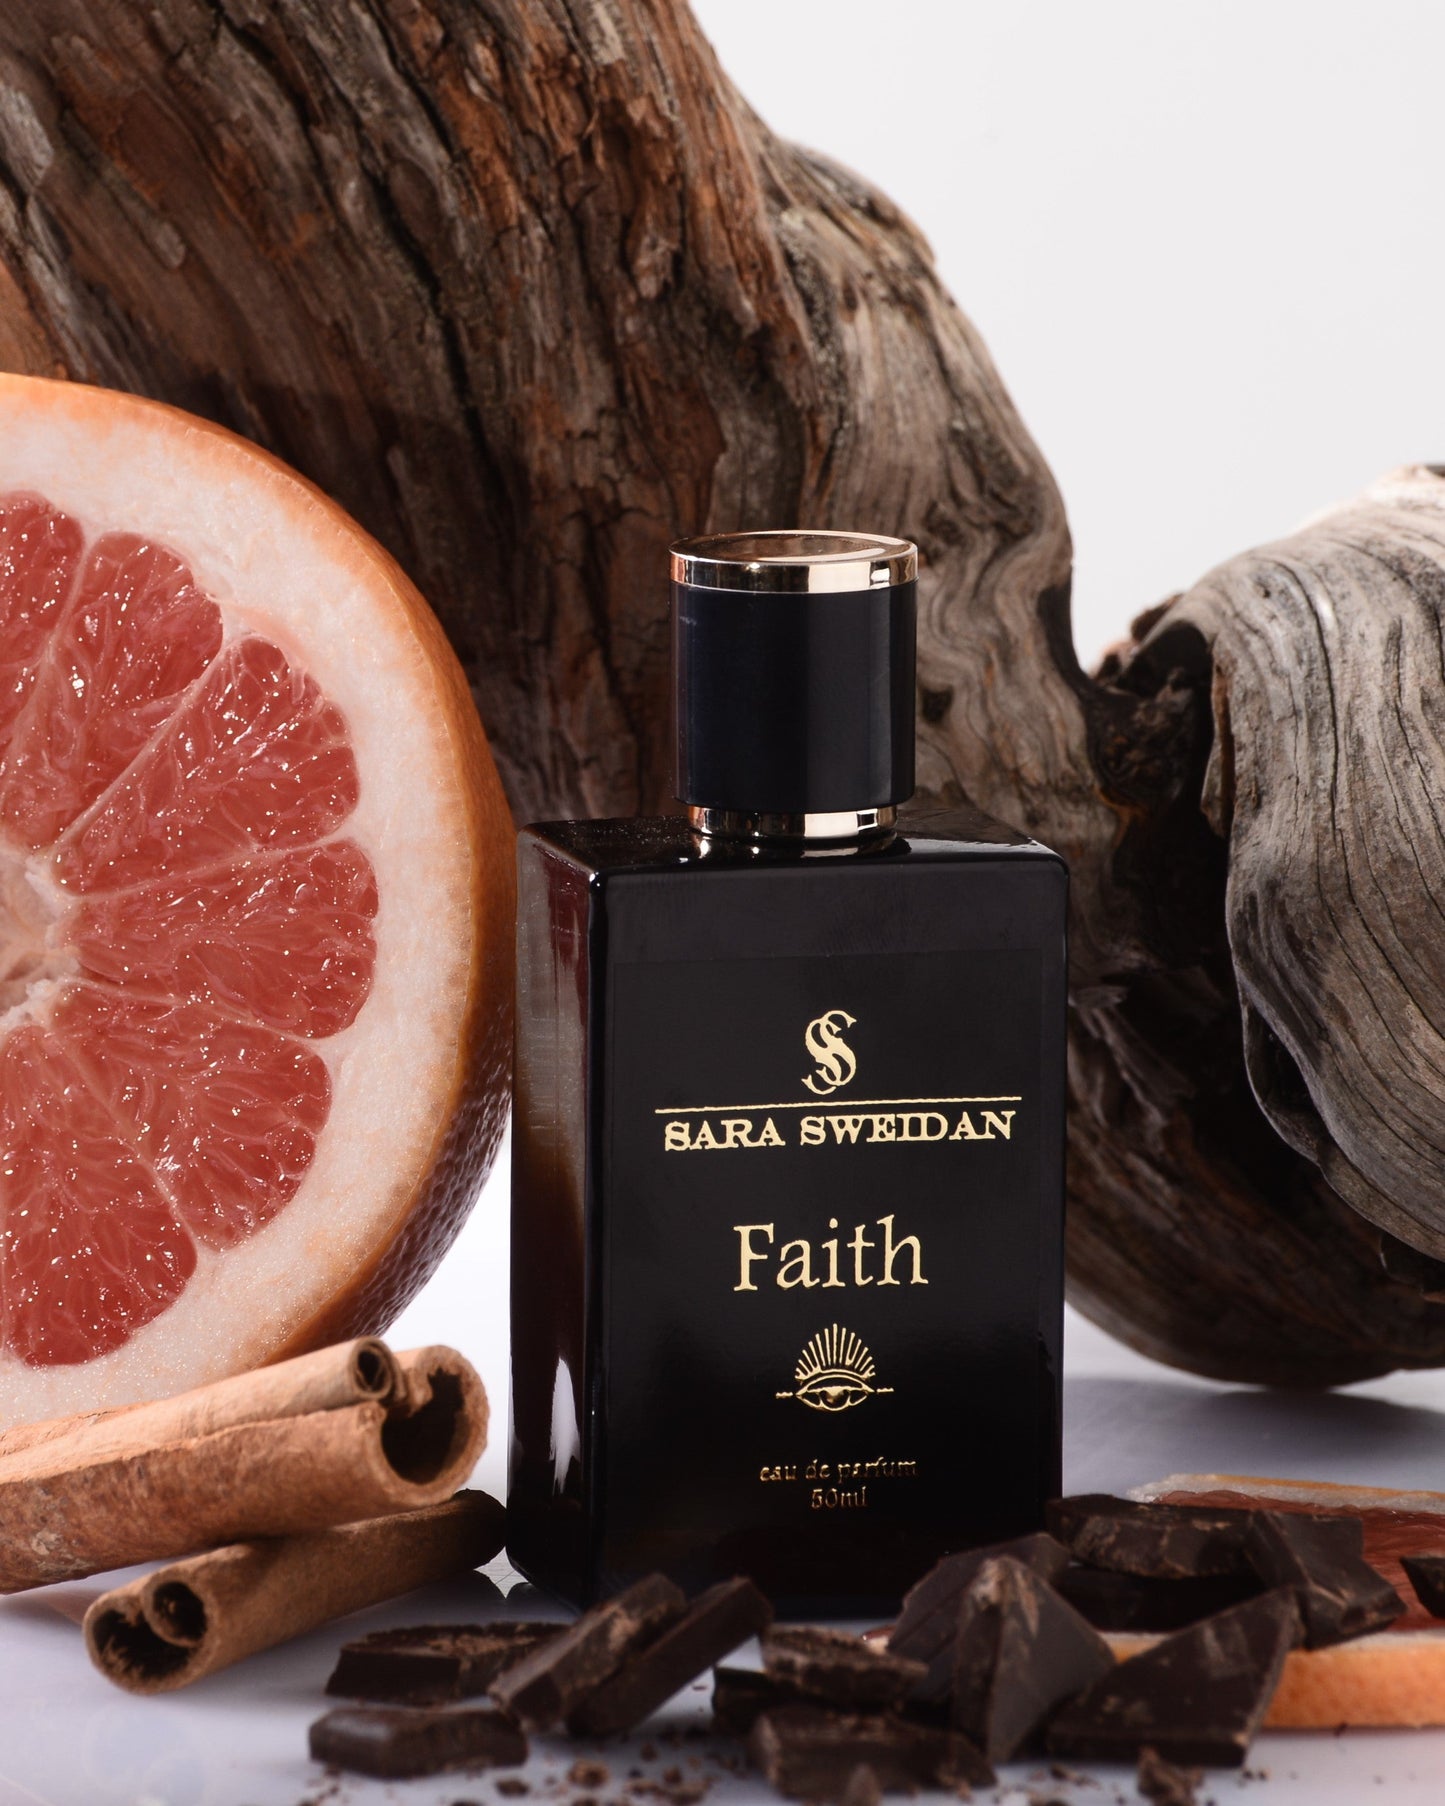 Perfume "Faith" By Sara Sweidan